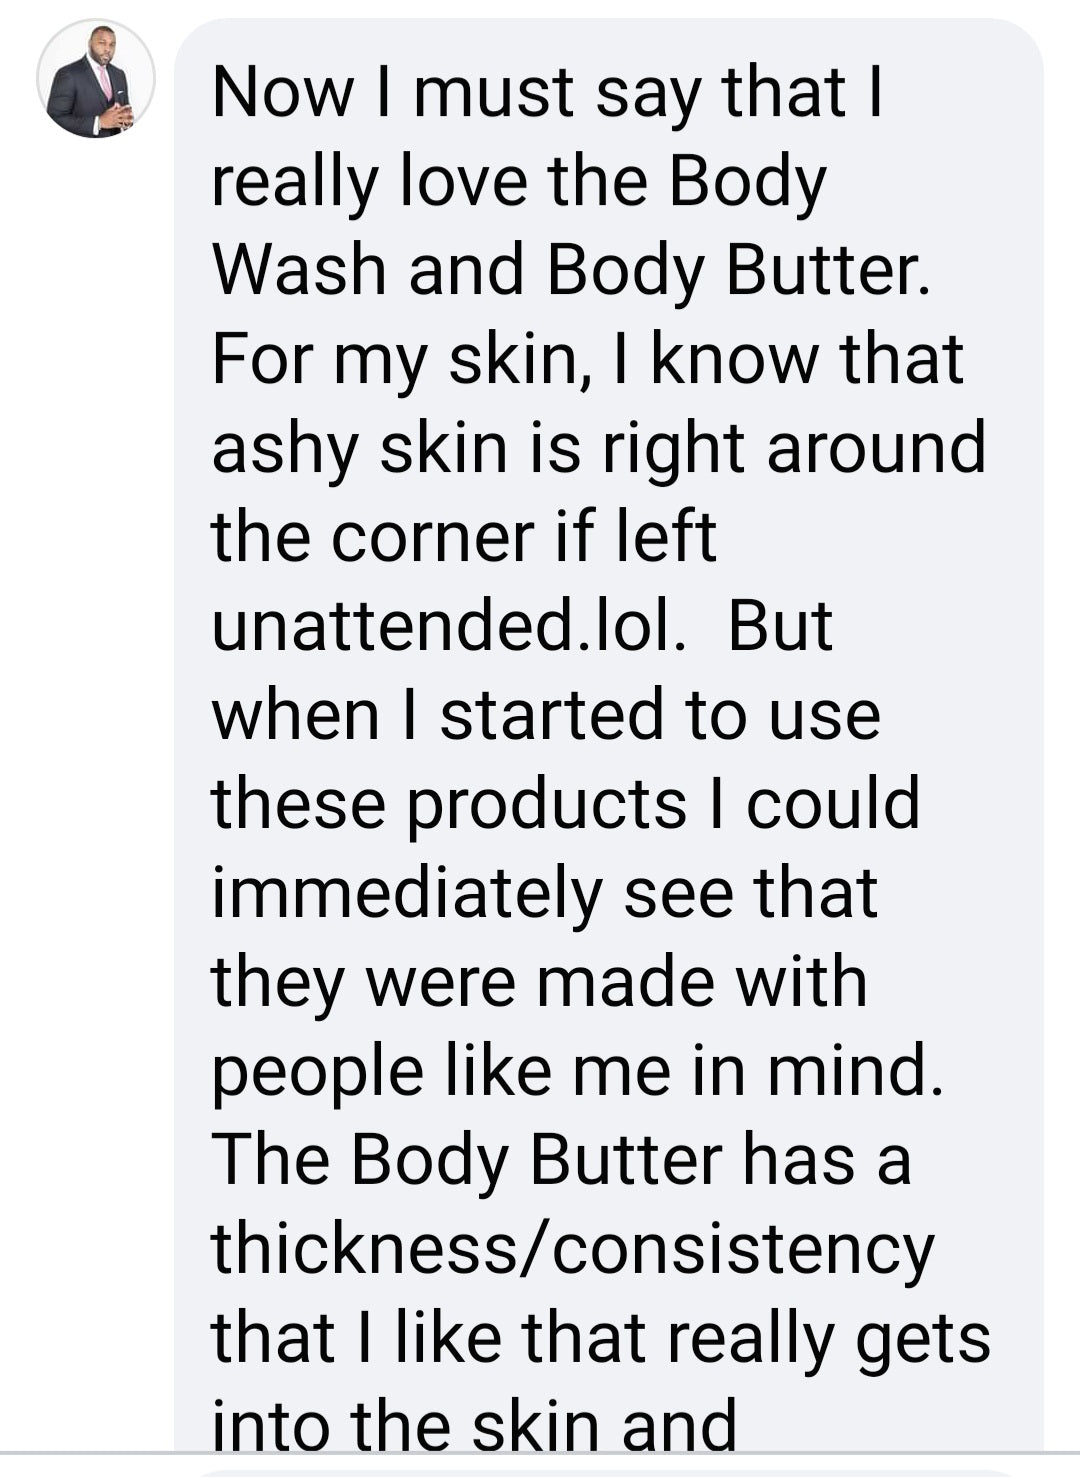 Body Butter  -